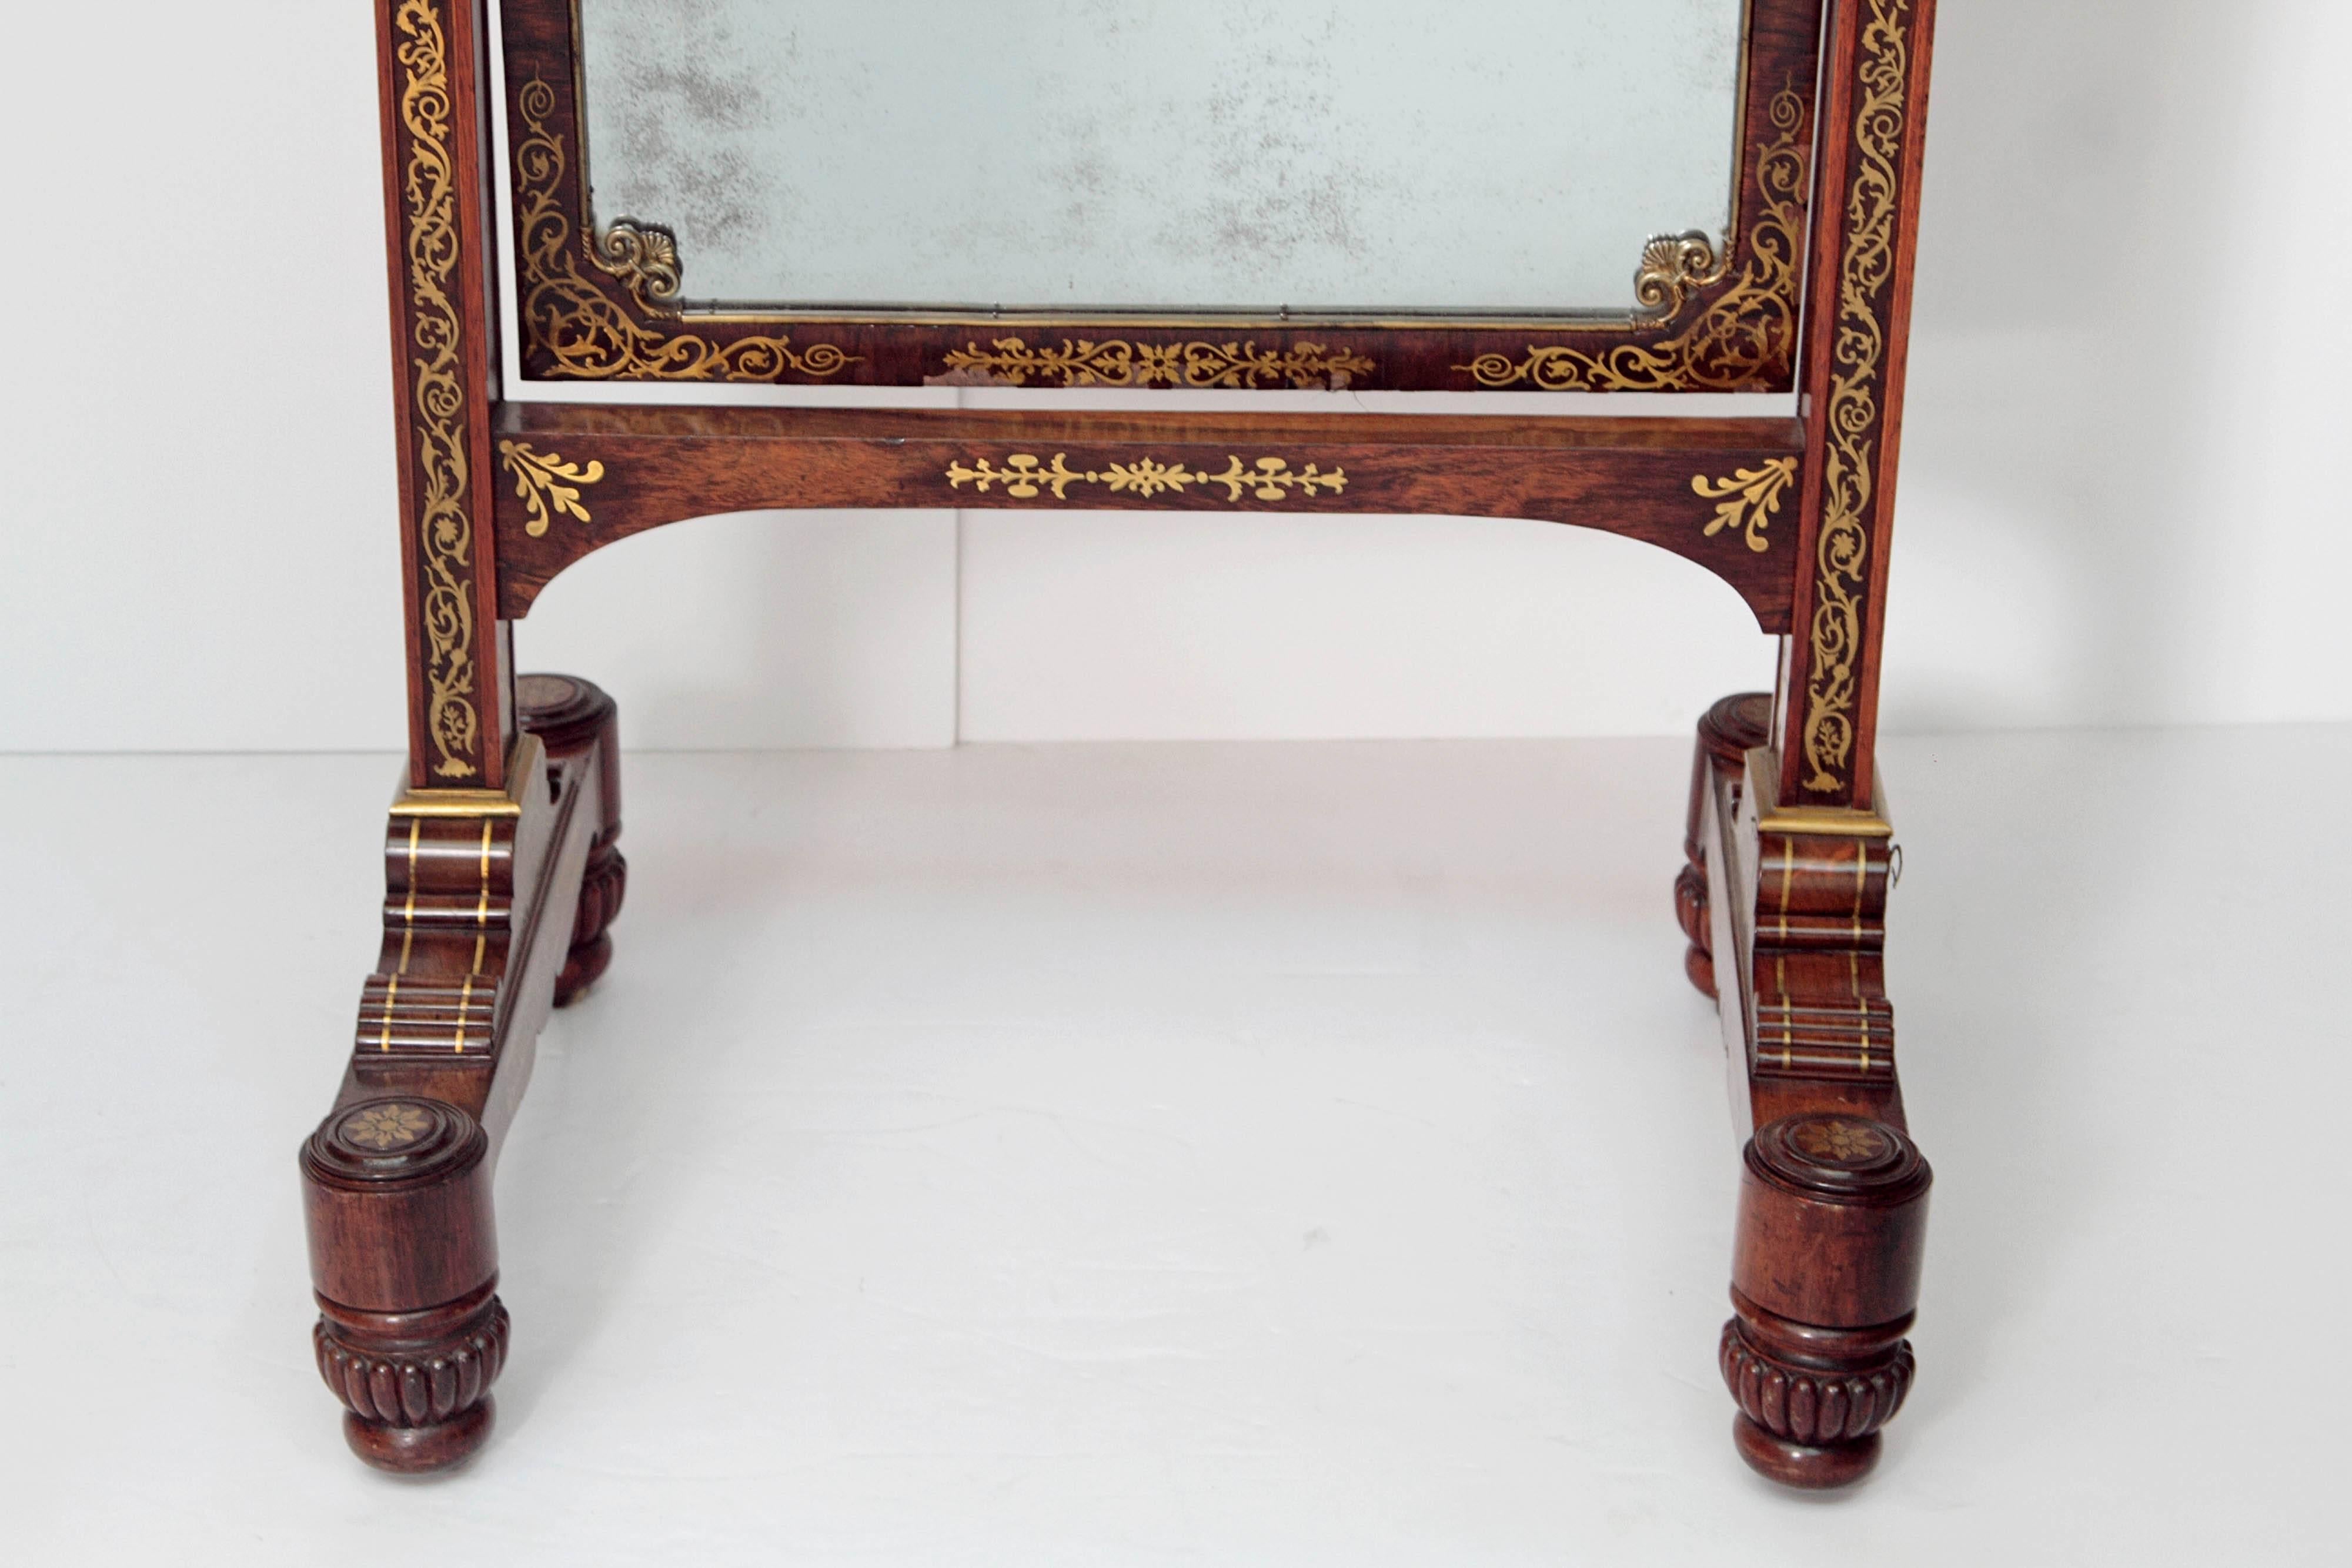 Englischer neoklassizistischer Regency-Spiegel aus Palisanderholz, aufwändig mit Messingintarsien verziert.